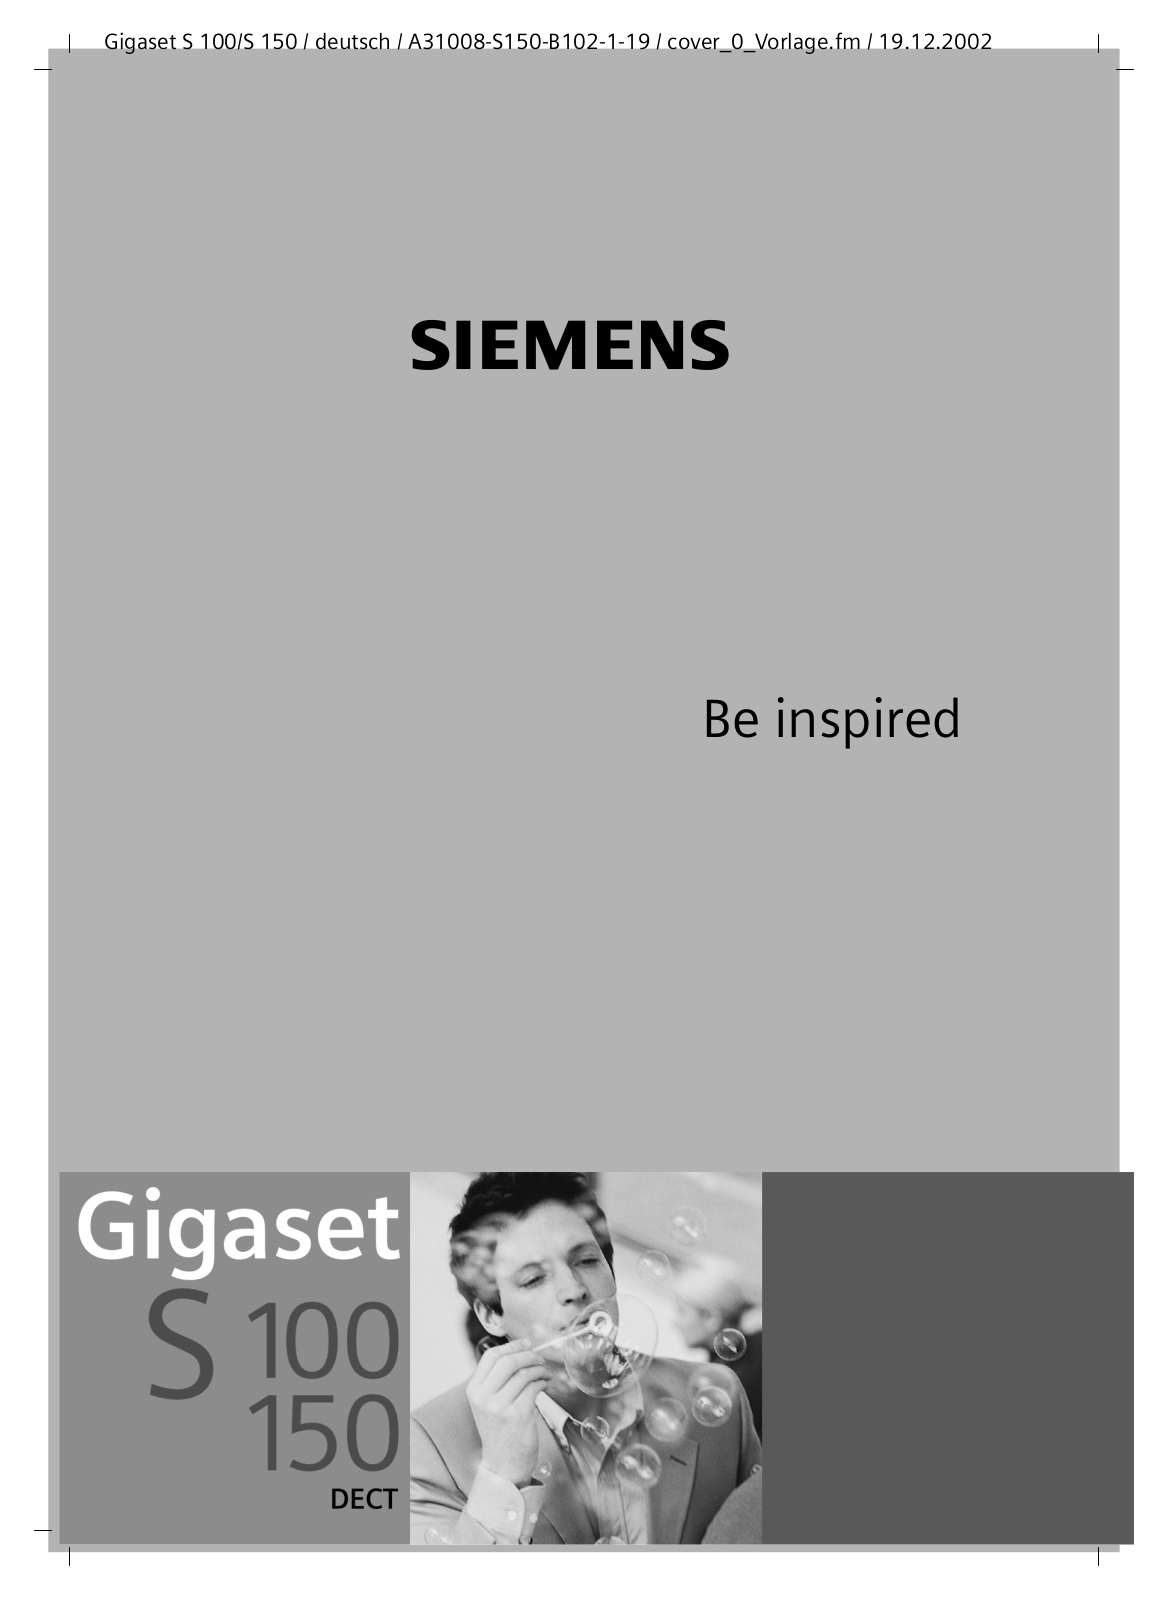 SIEMENS GIGASET S150 DECT User Manual